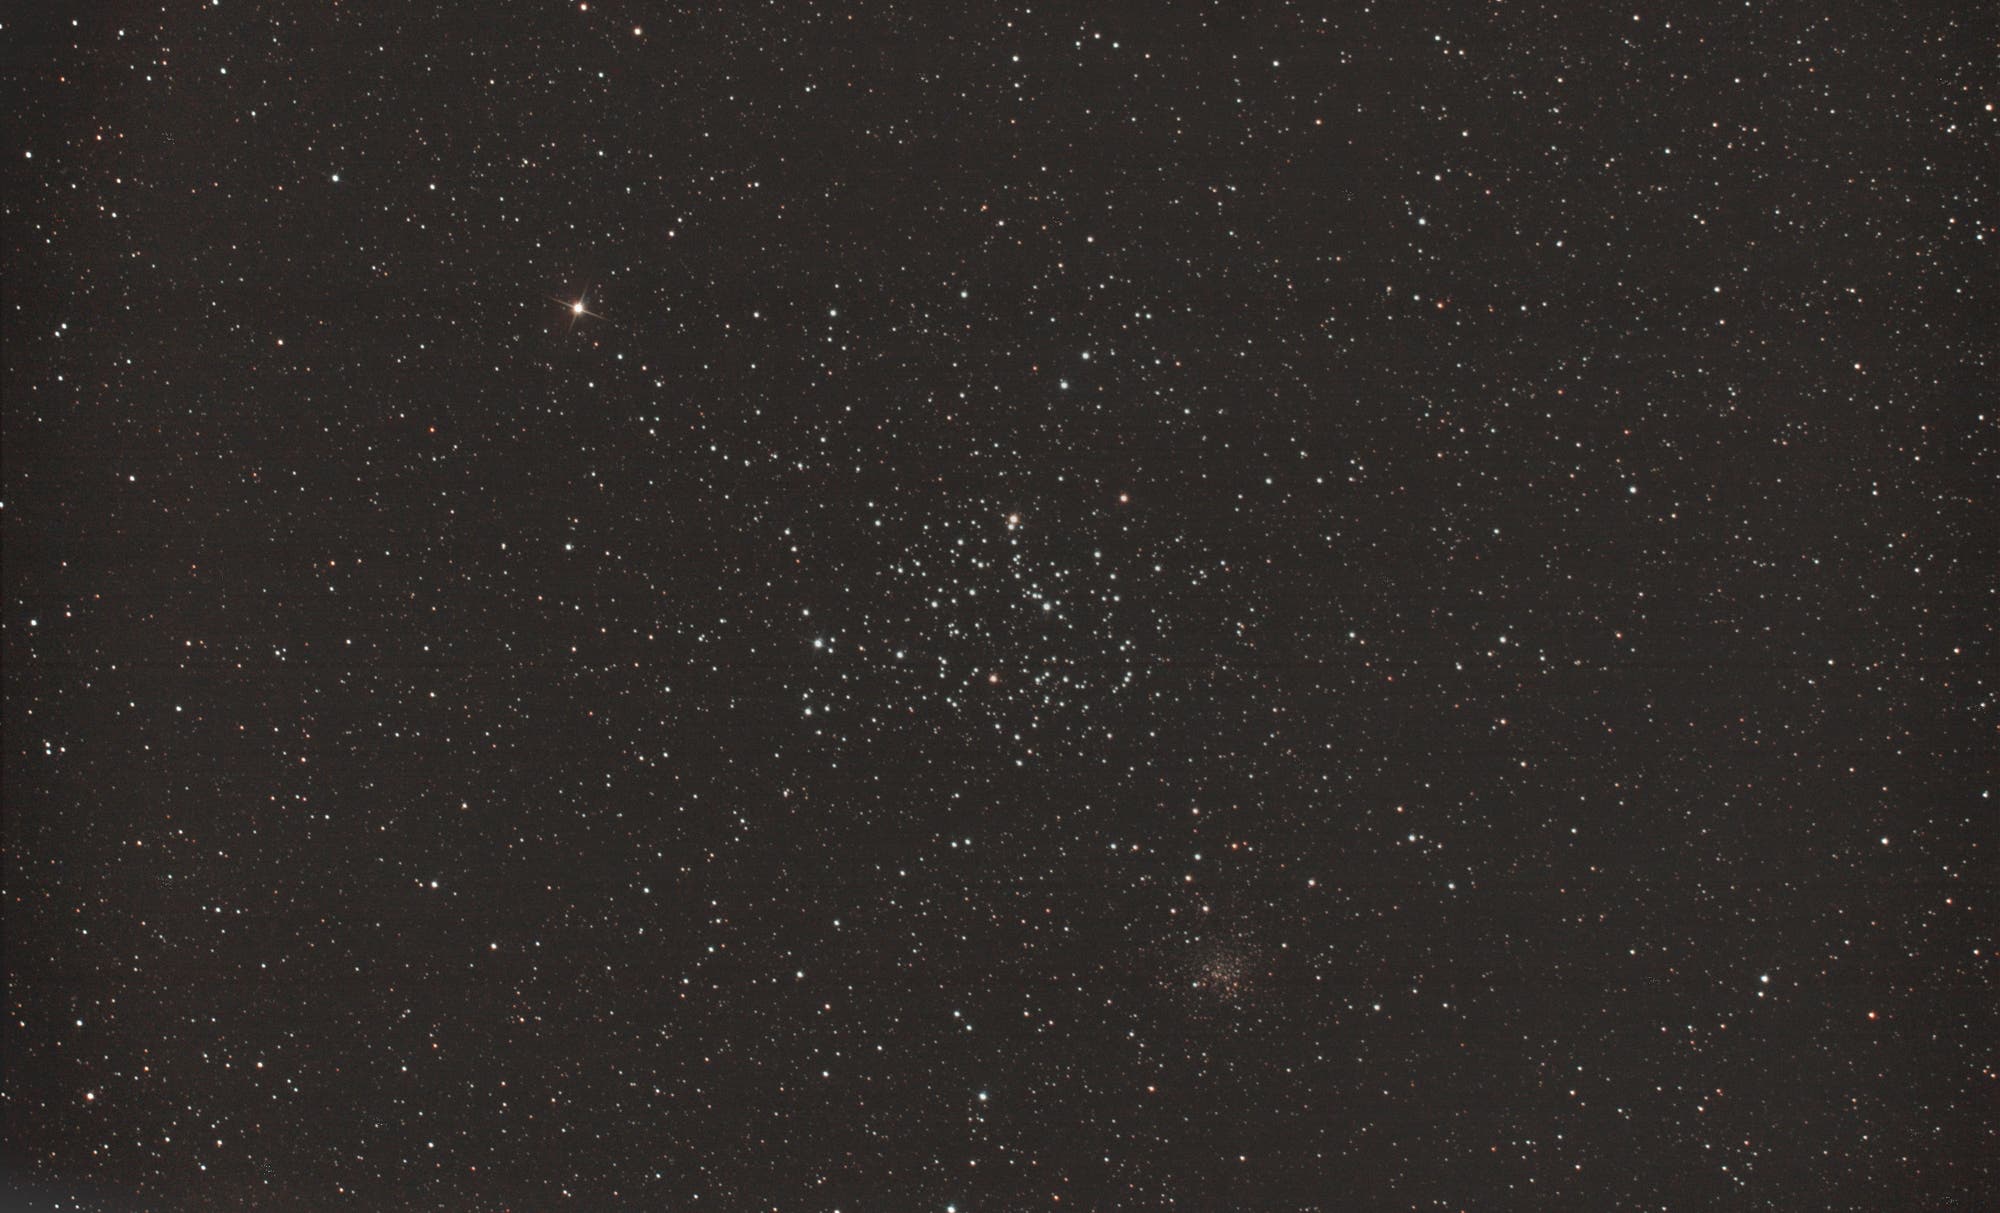 offener Sternhaufen M35 mit NGC 2158 im Sternbild Zwillinge (Gemini)